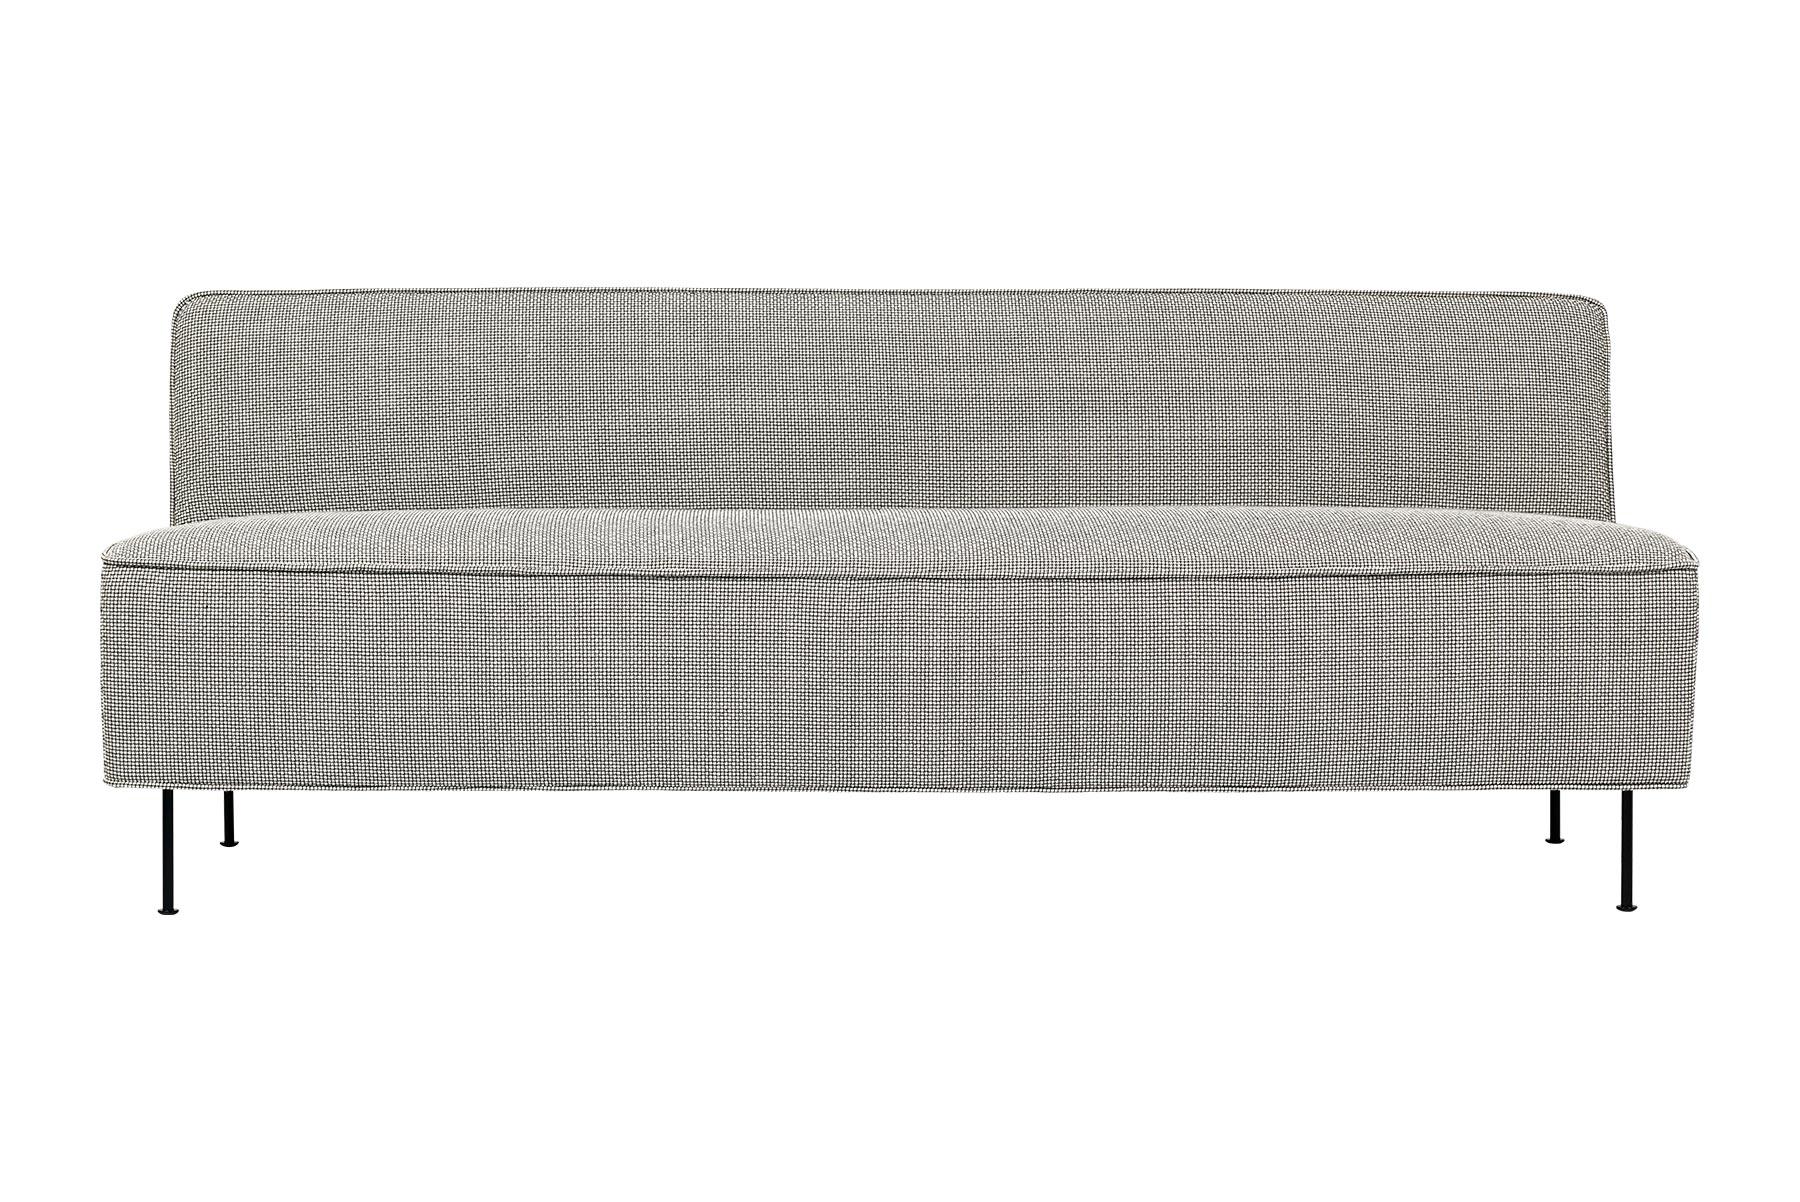 Le canapé Modern Line a été conçu en 1949 par Greta M. Grossman. Modern Line est l'un de ses designs les plus élégants et les plus minimalistes, et a été salué en particulier pour son caractère représentatif de son expérience du design scandinave.